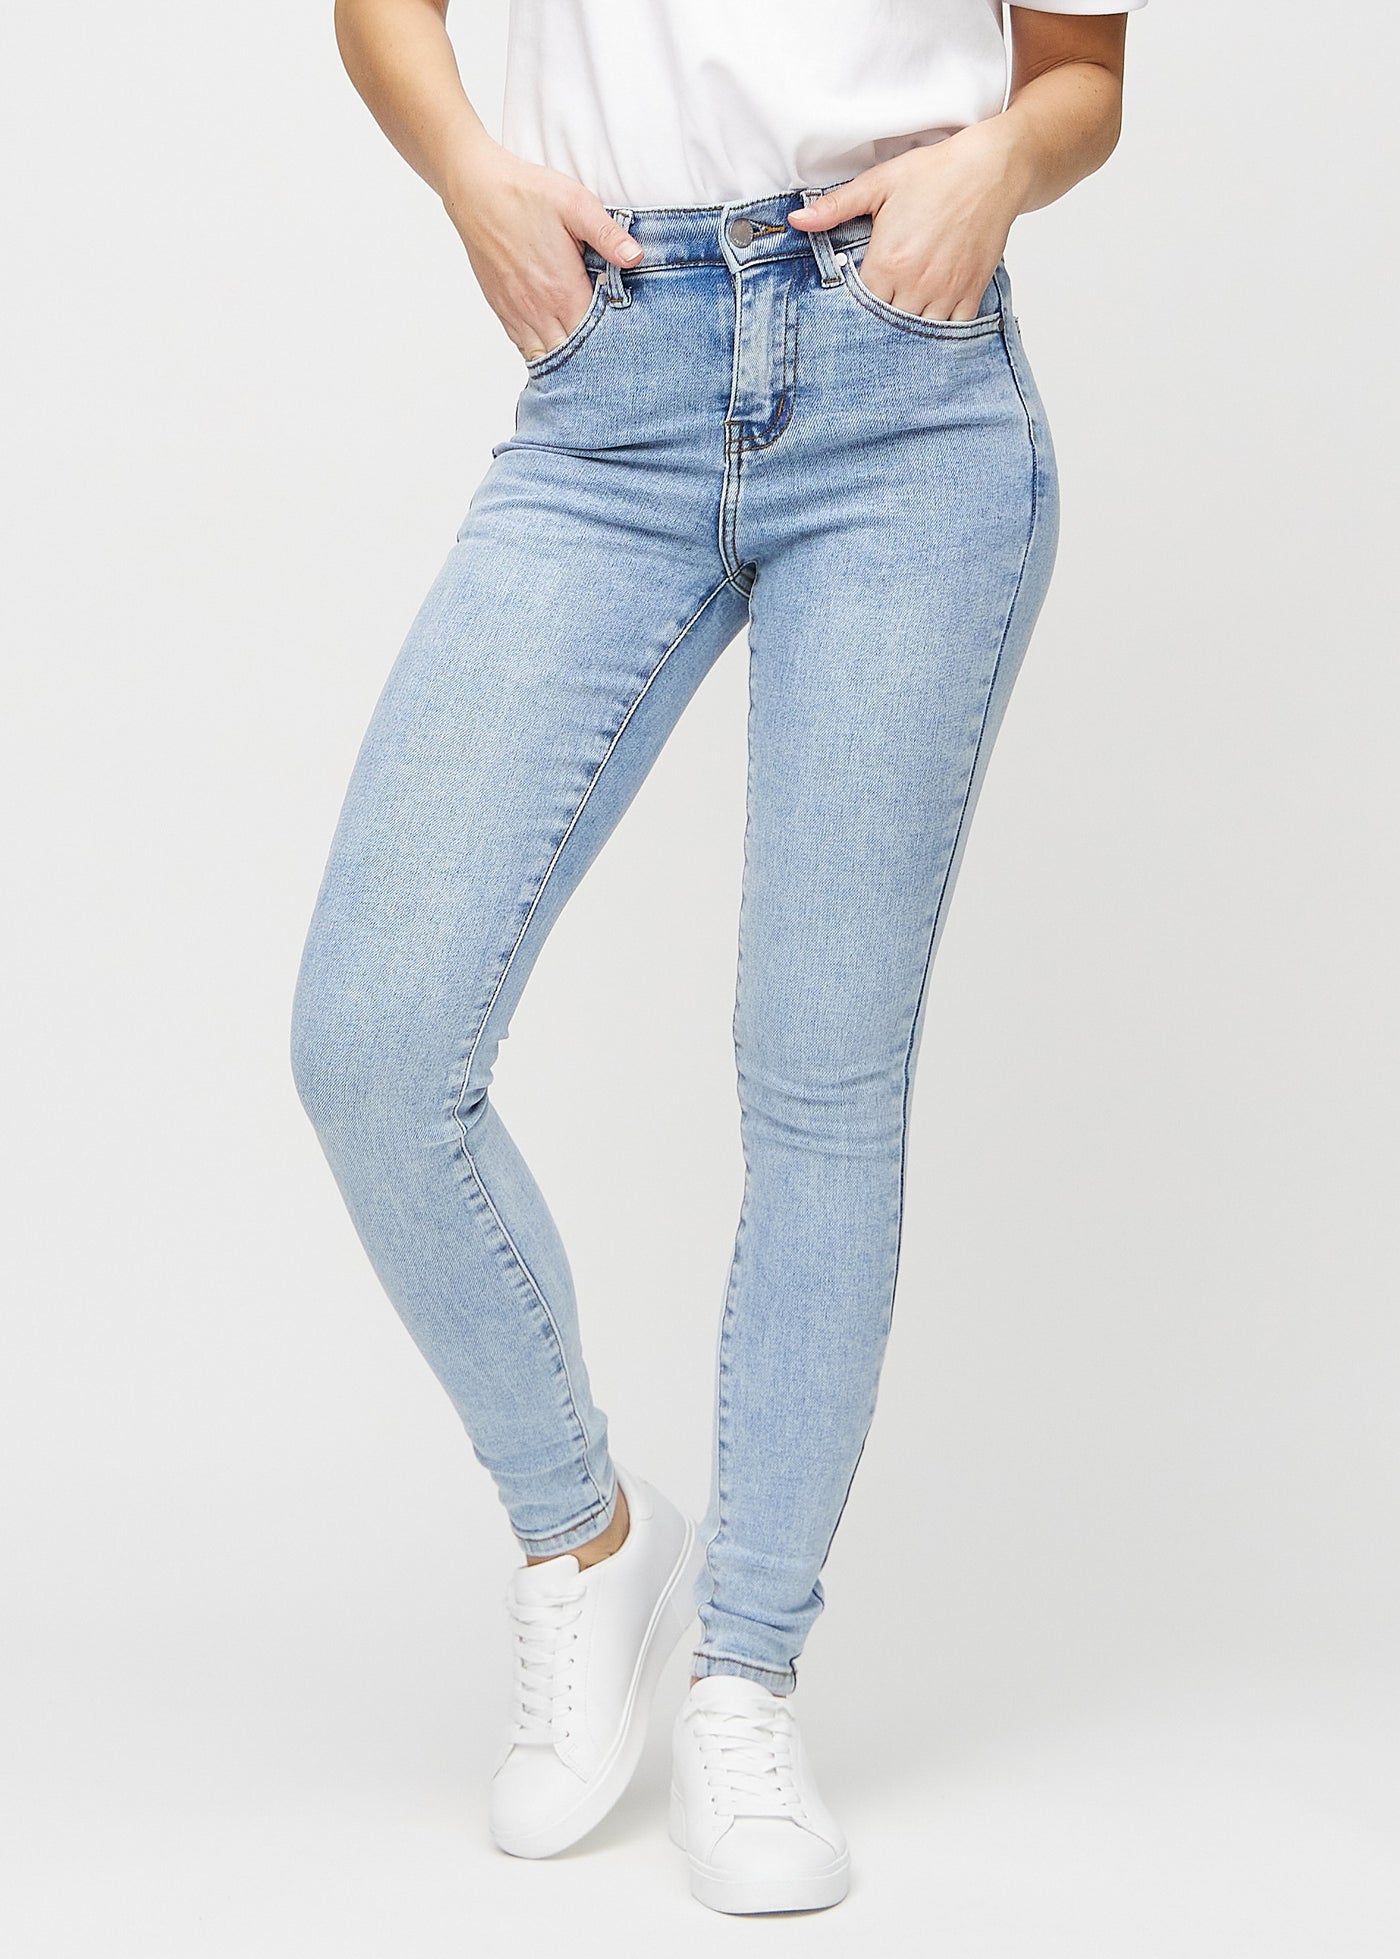 Lys denim skinny jeans, modelnavn Waves, som sidder tæt til benet, set forfra.